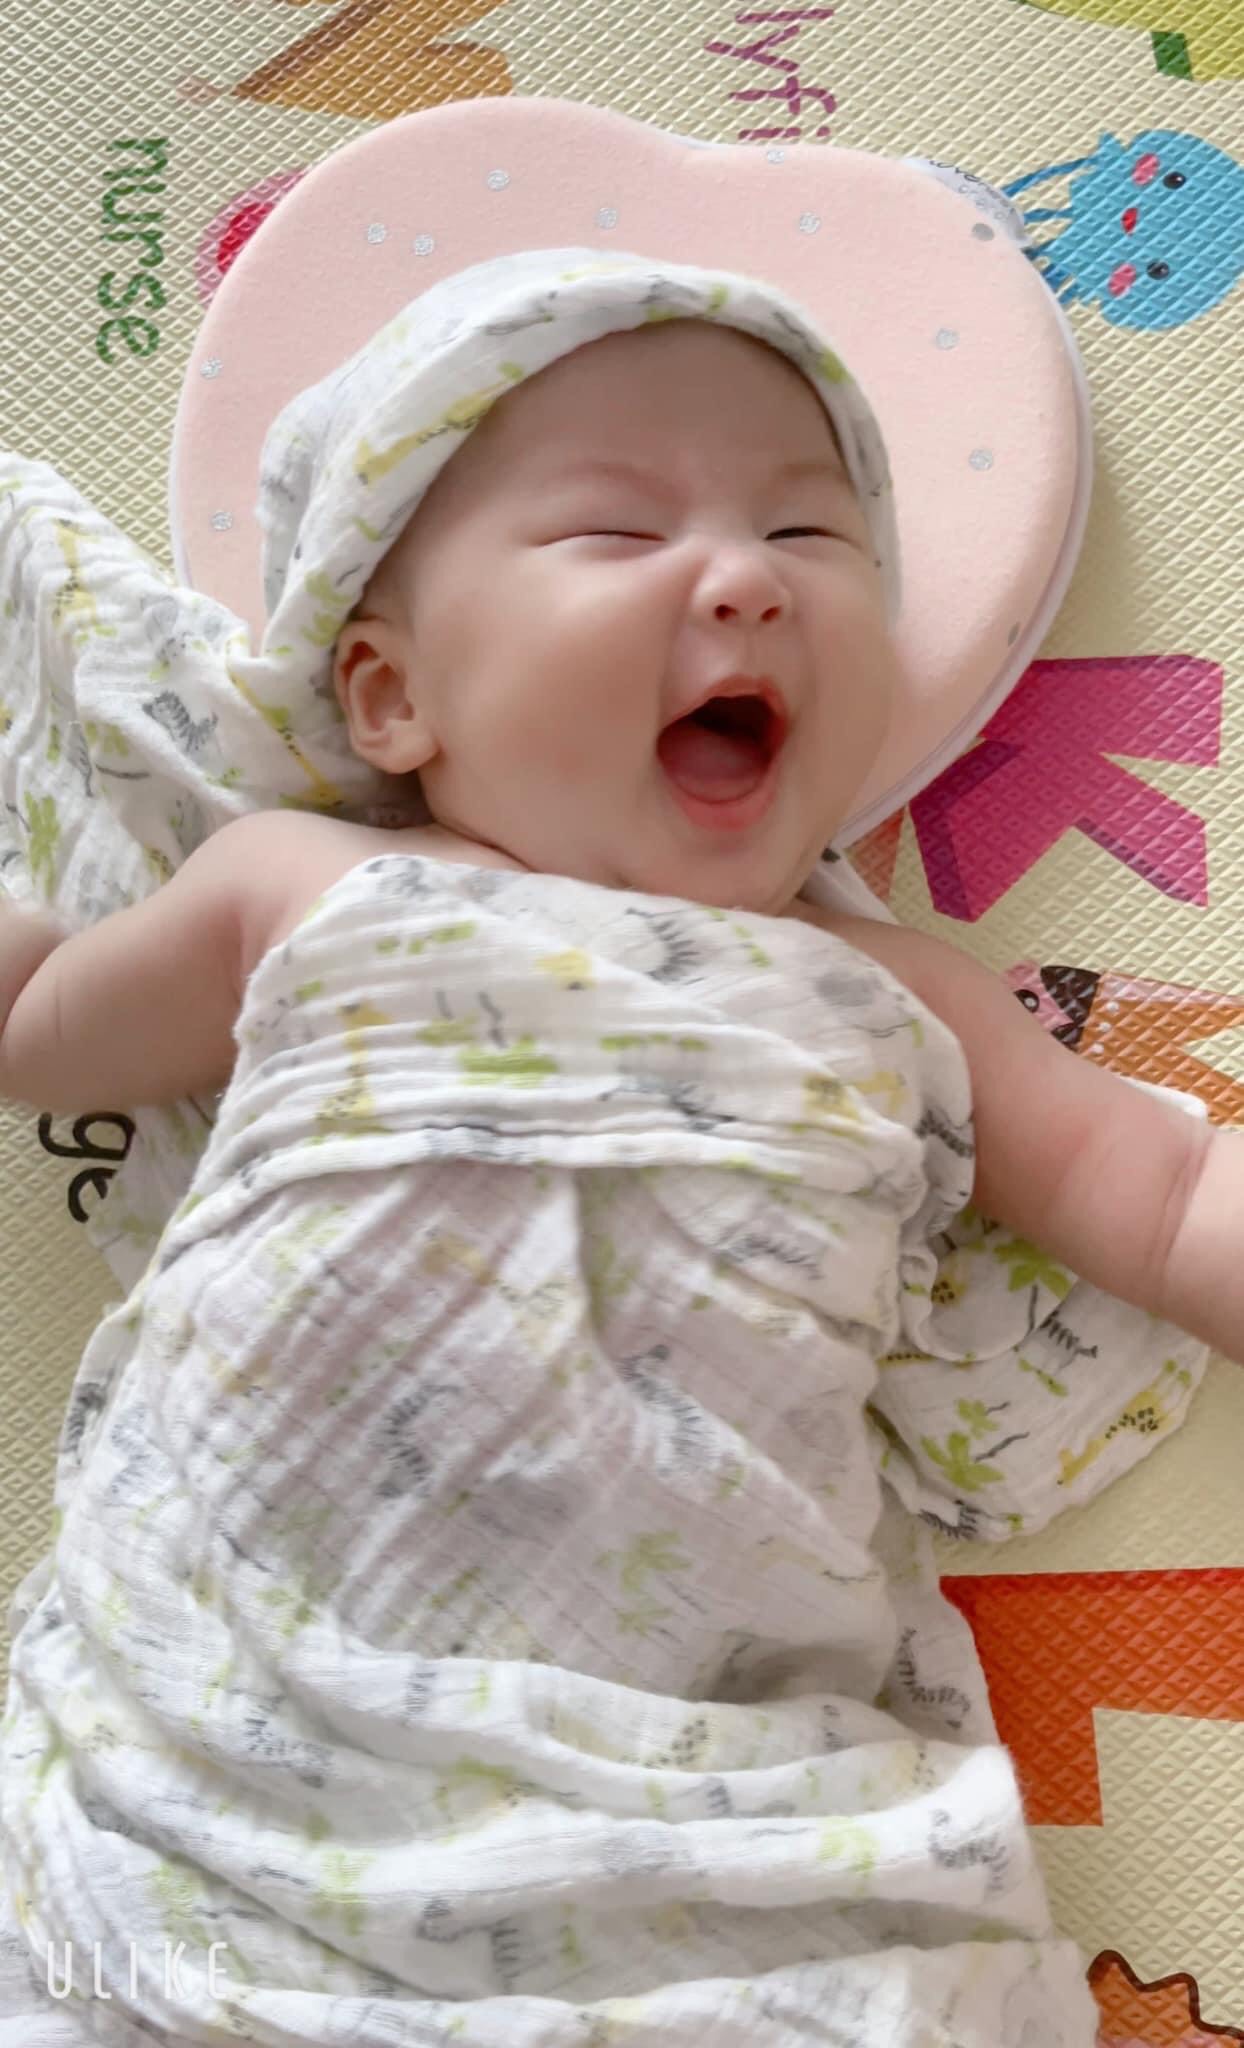 Mới 2 tháng tuổi, con gái Bảo Thanh đã chiếm sóng của mẹ trên MXH - Ảnh 3